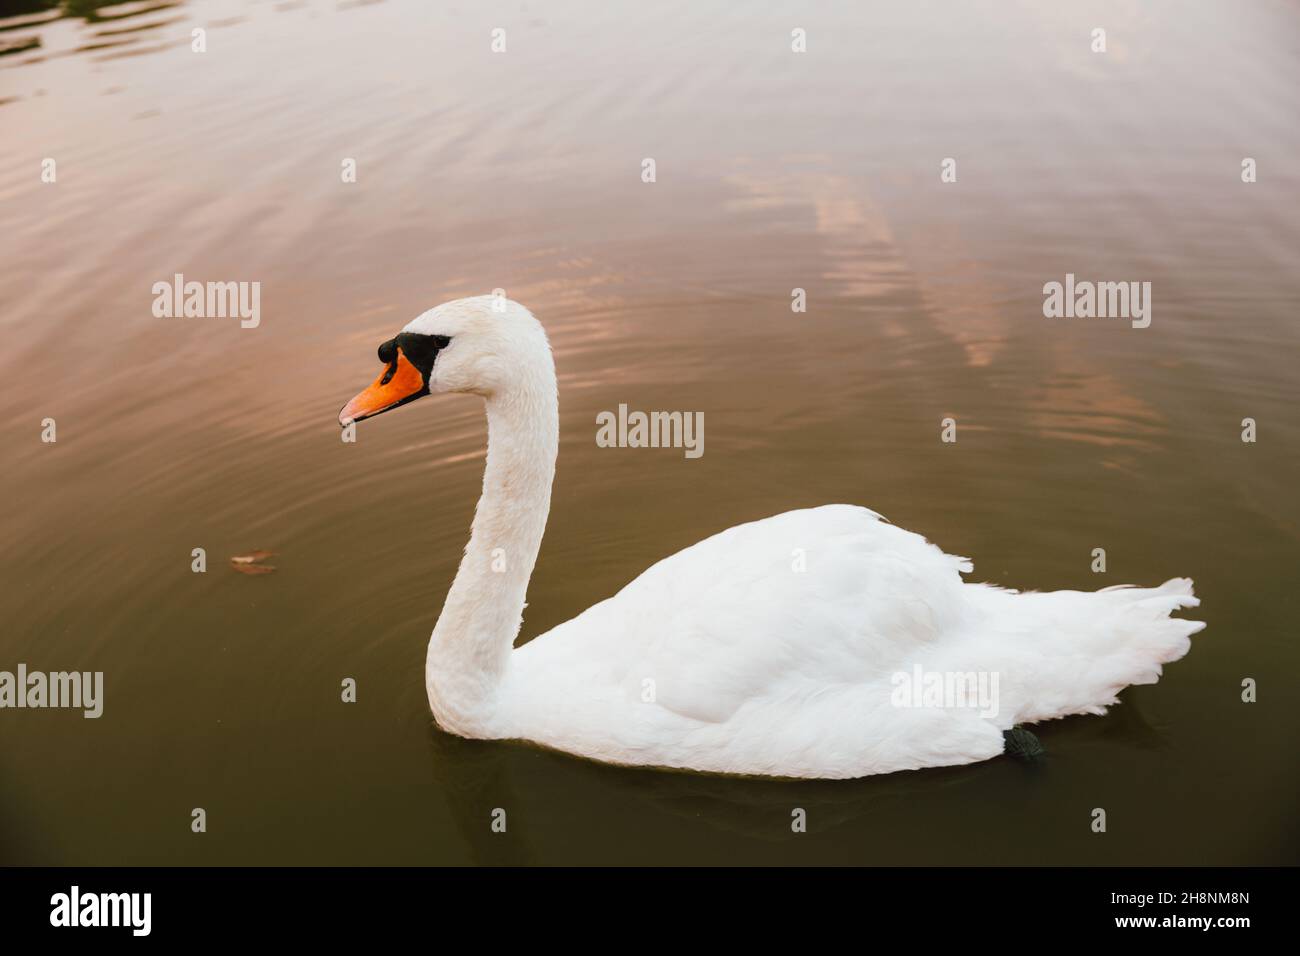 White swan on a lake. Stock Photo